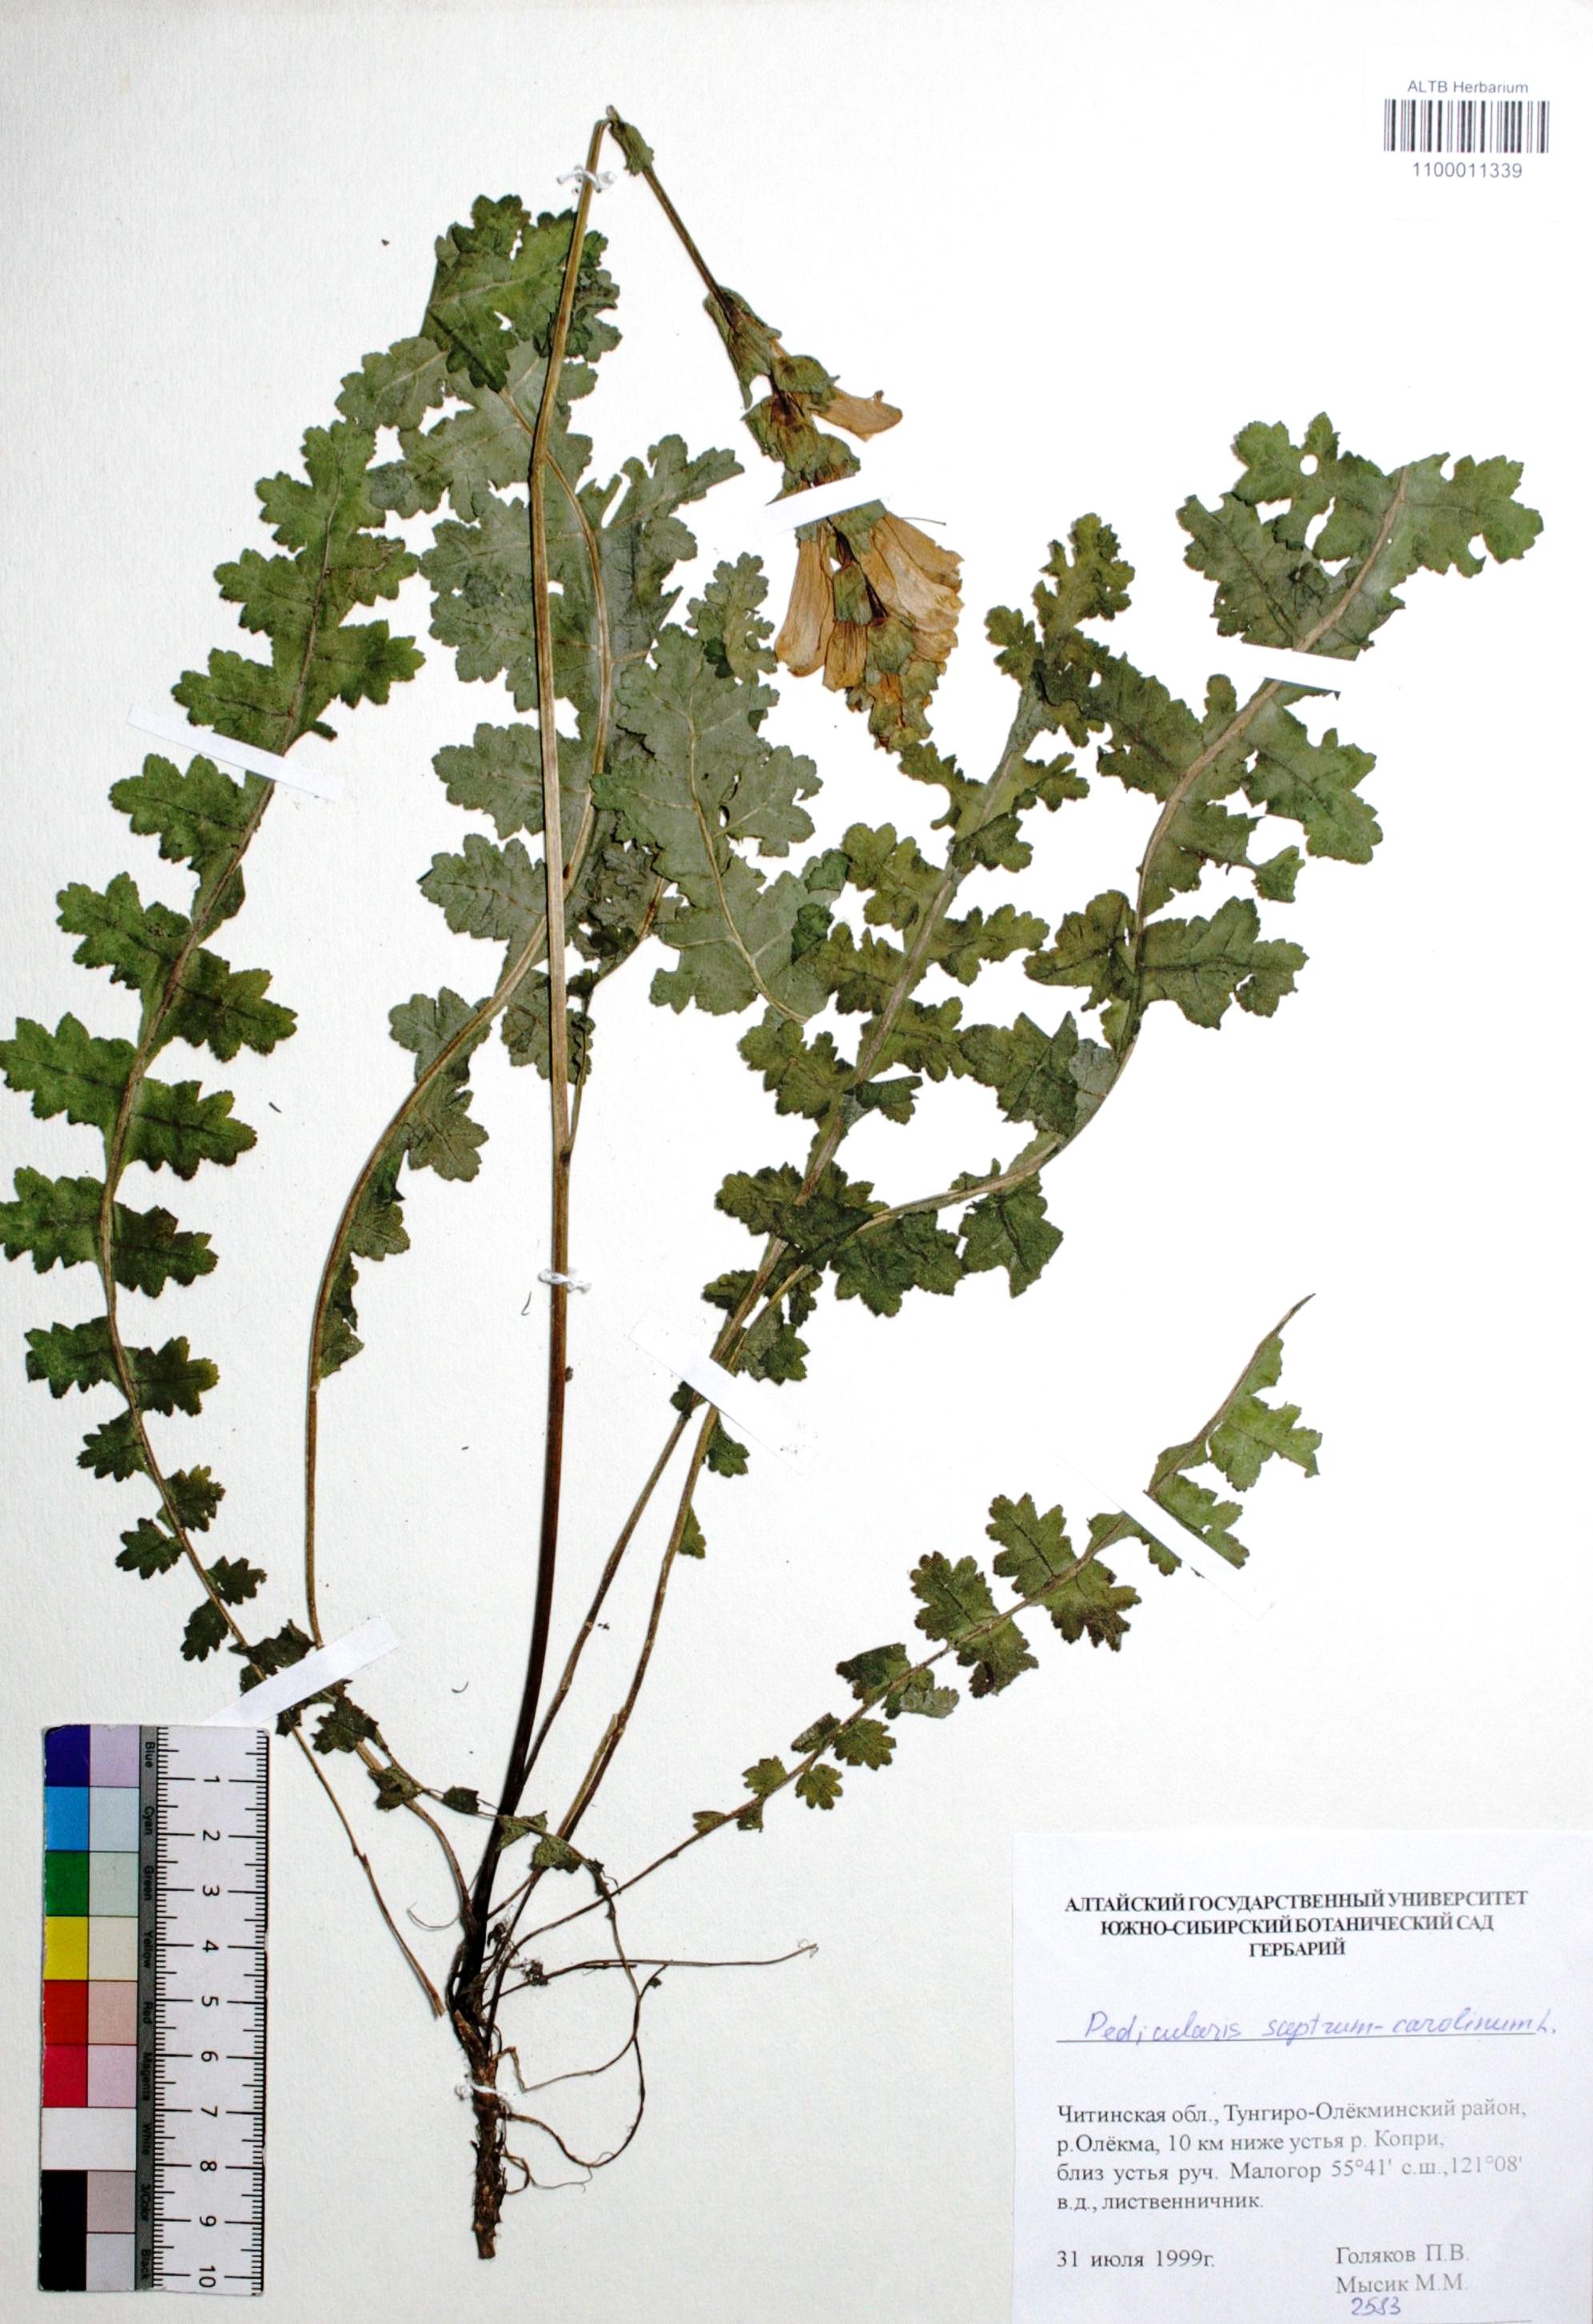 Pedicularis suptrum-carolinum L. 